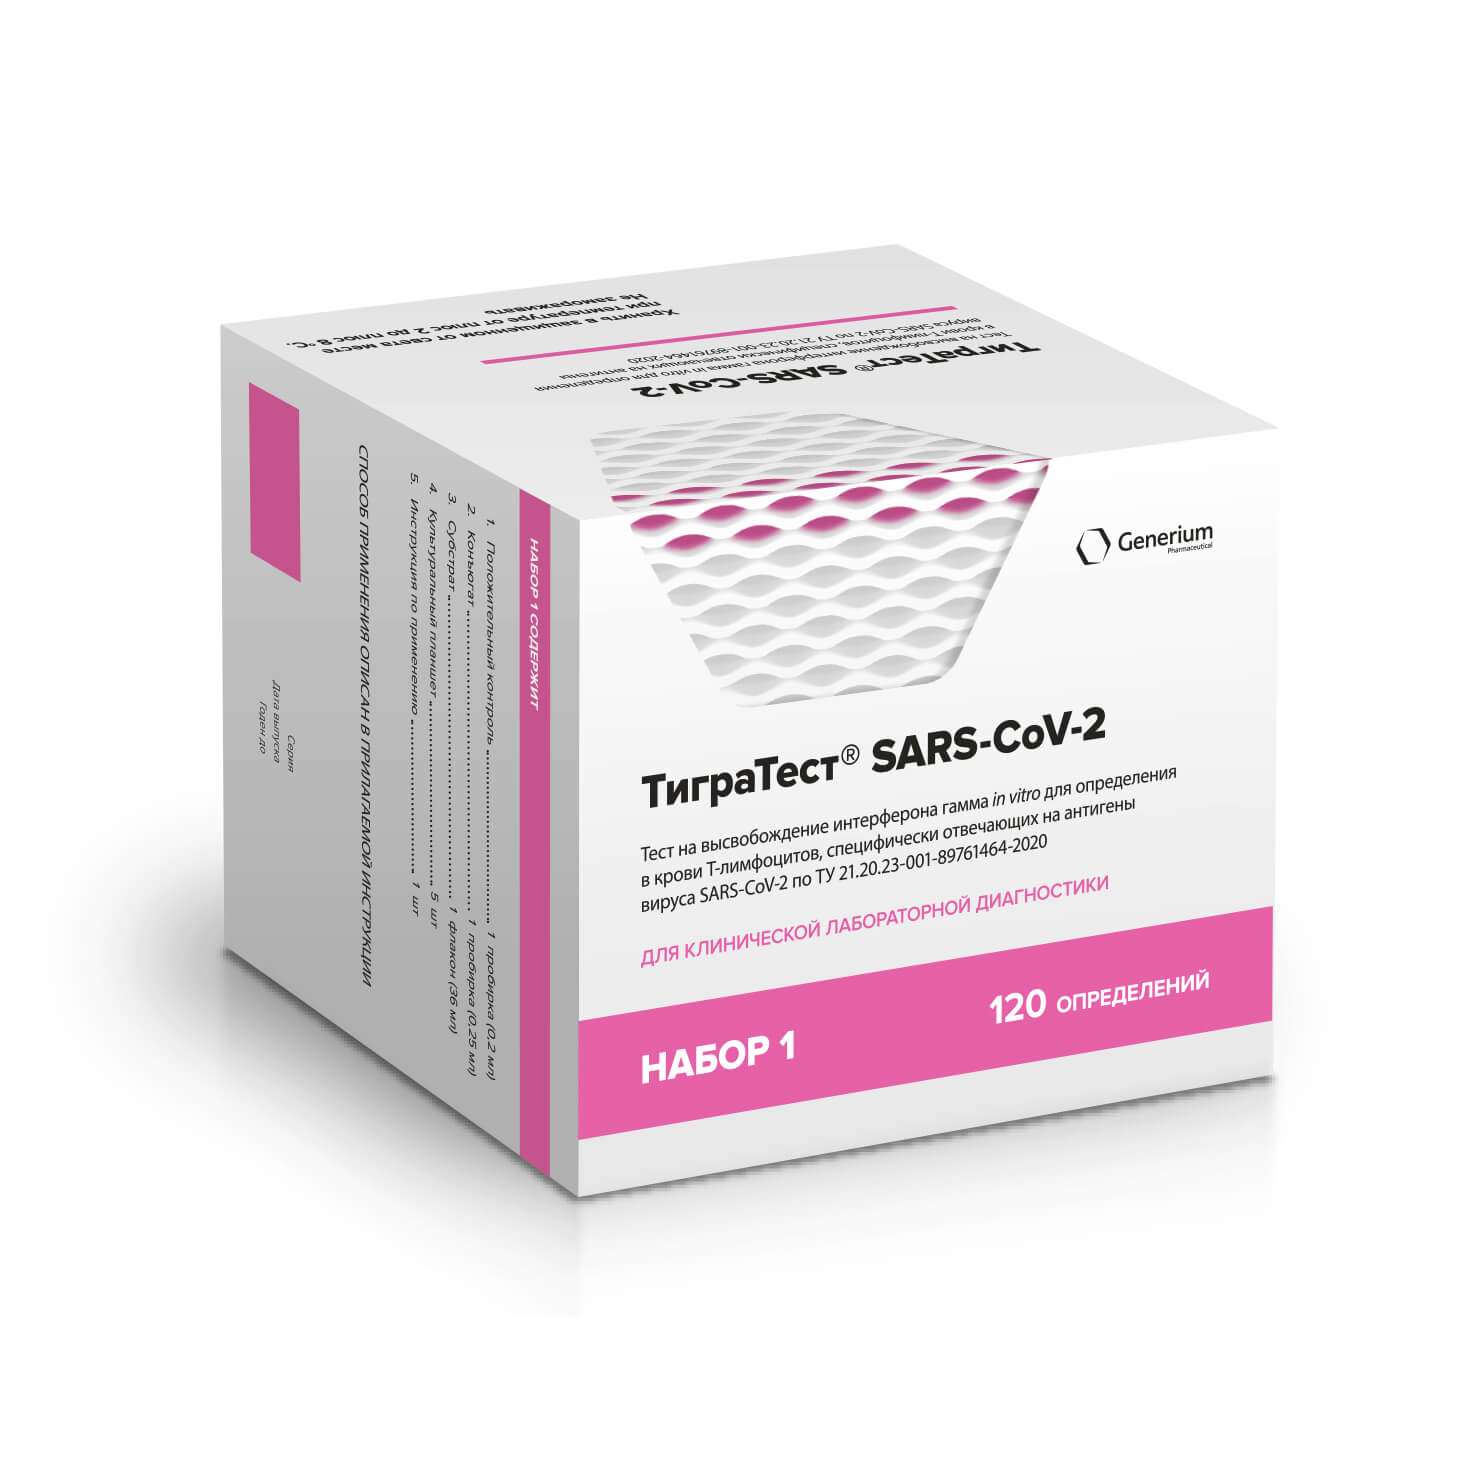 ТиграТест® SARS-CoV-2